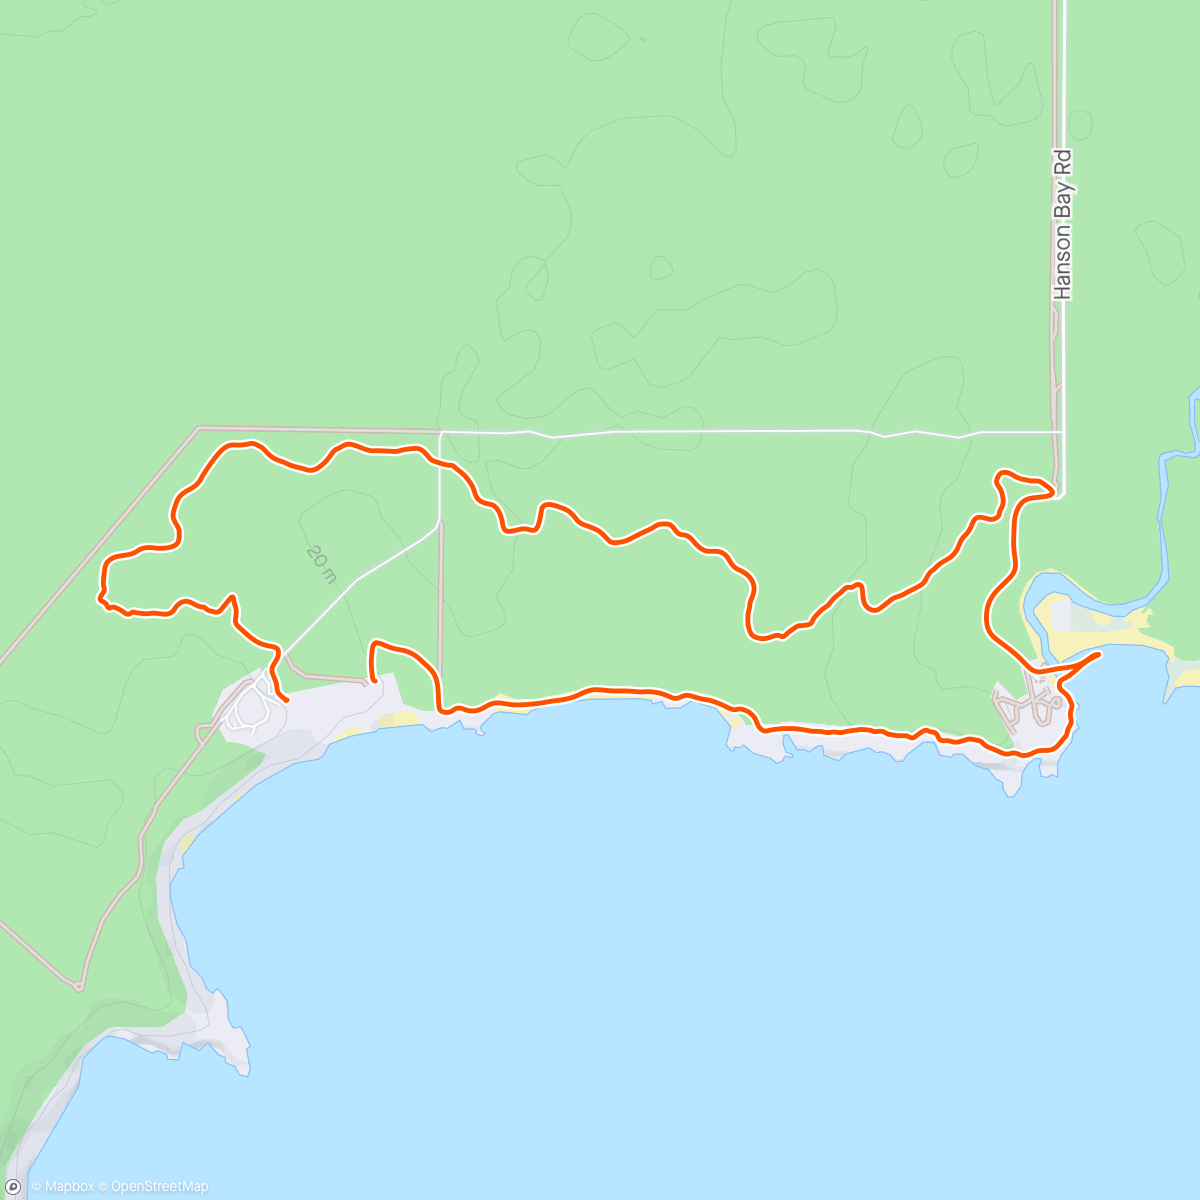 アクティビティ「Morning walk to Hansen Bay Beach」の地図